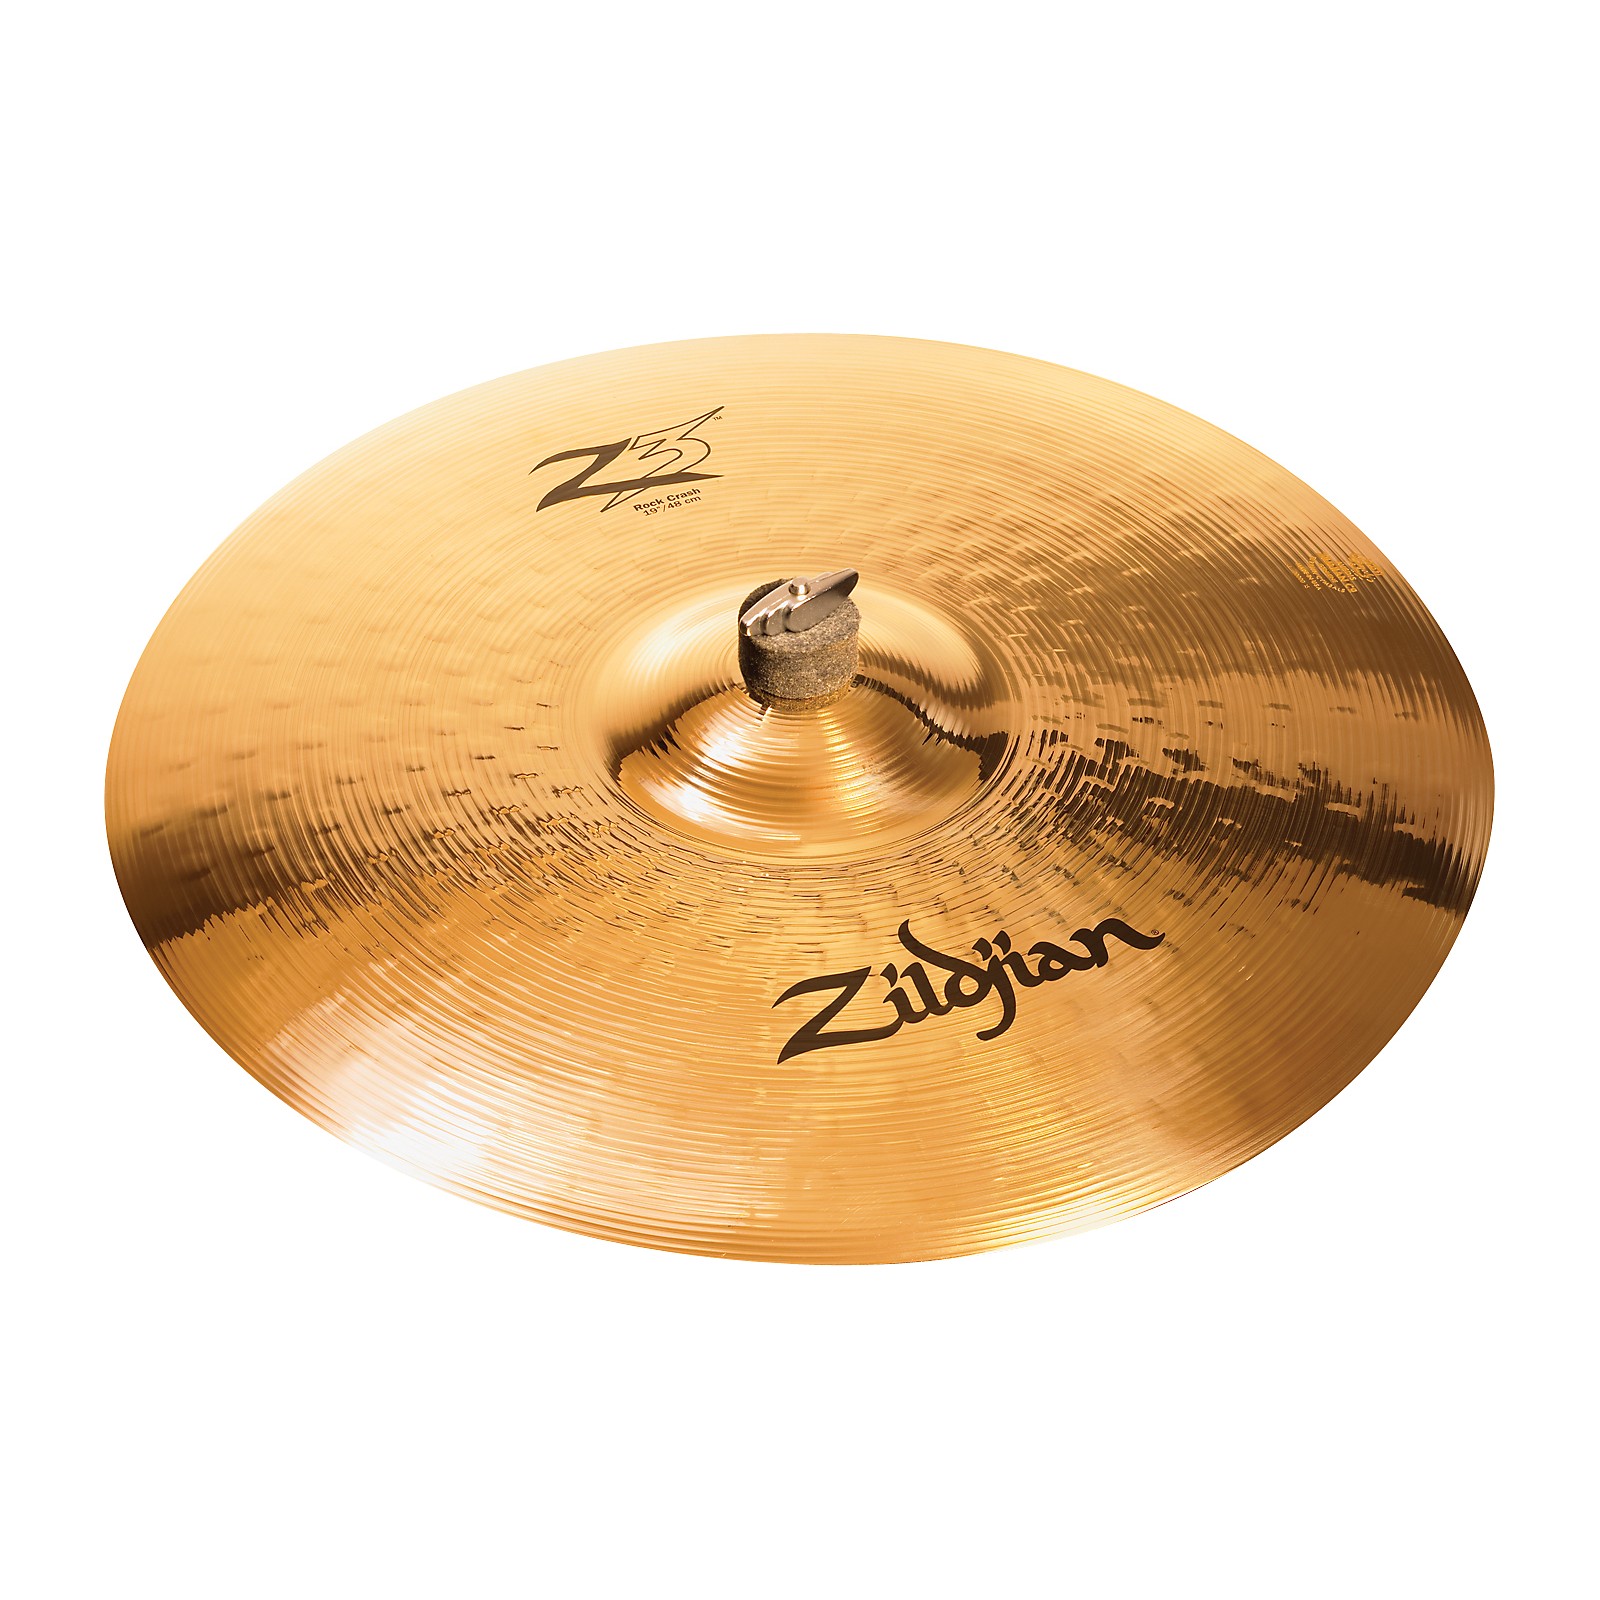 Zildjian Z3 Rock Crash Cymbal 18 in. | Guitar Center